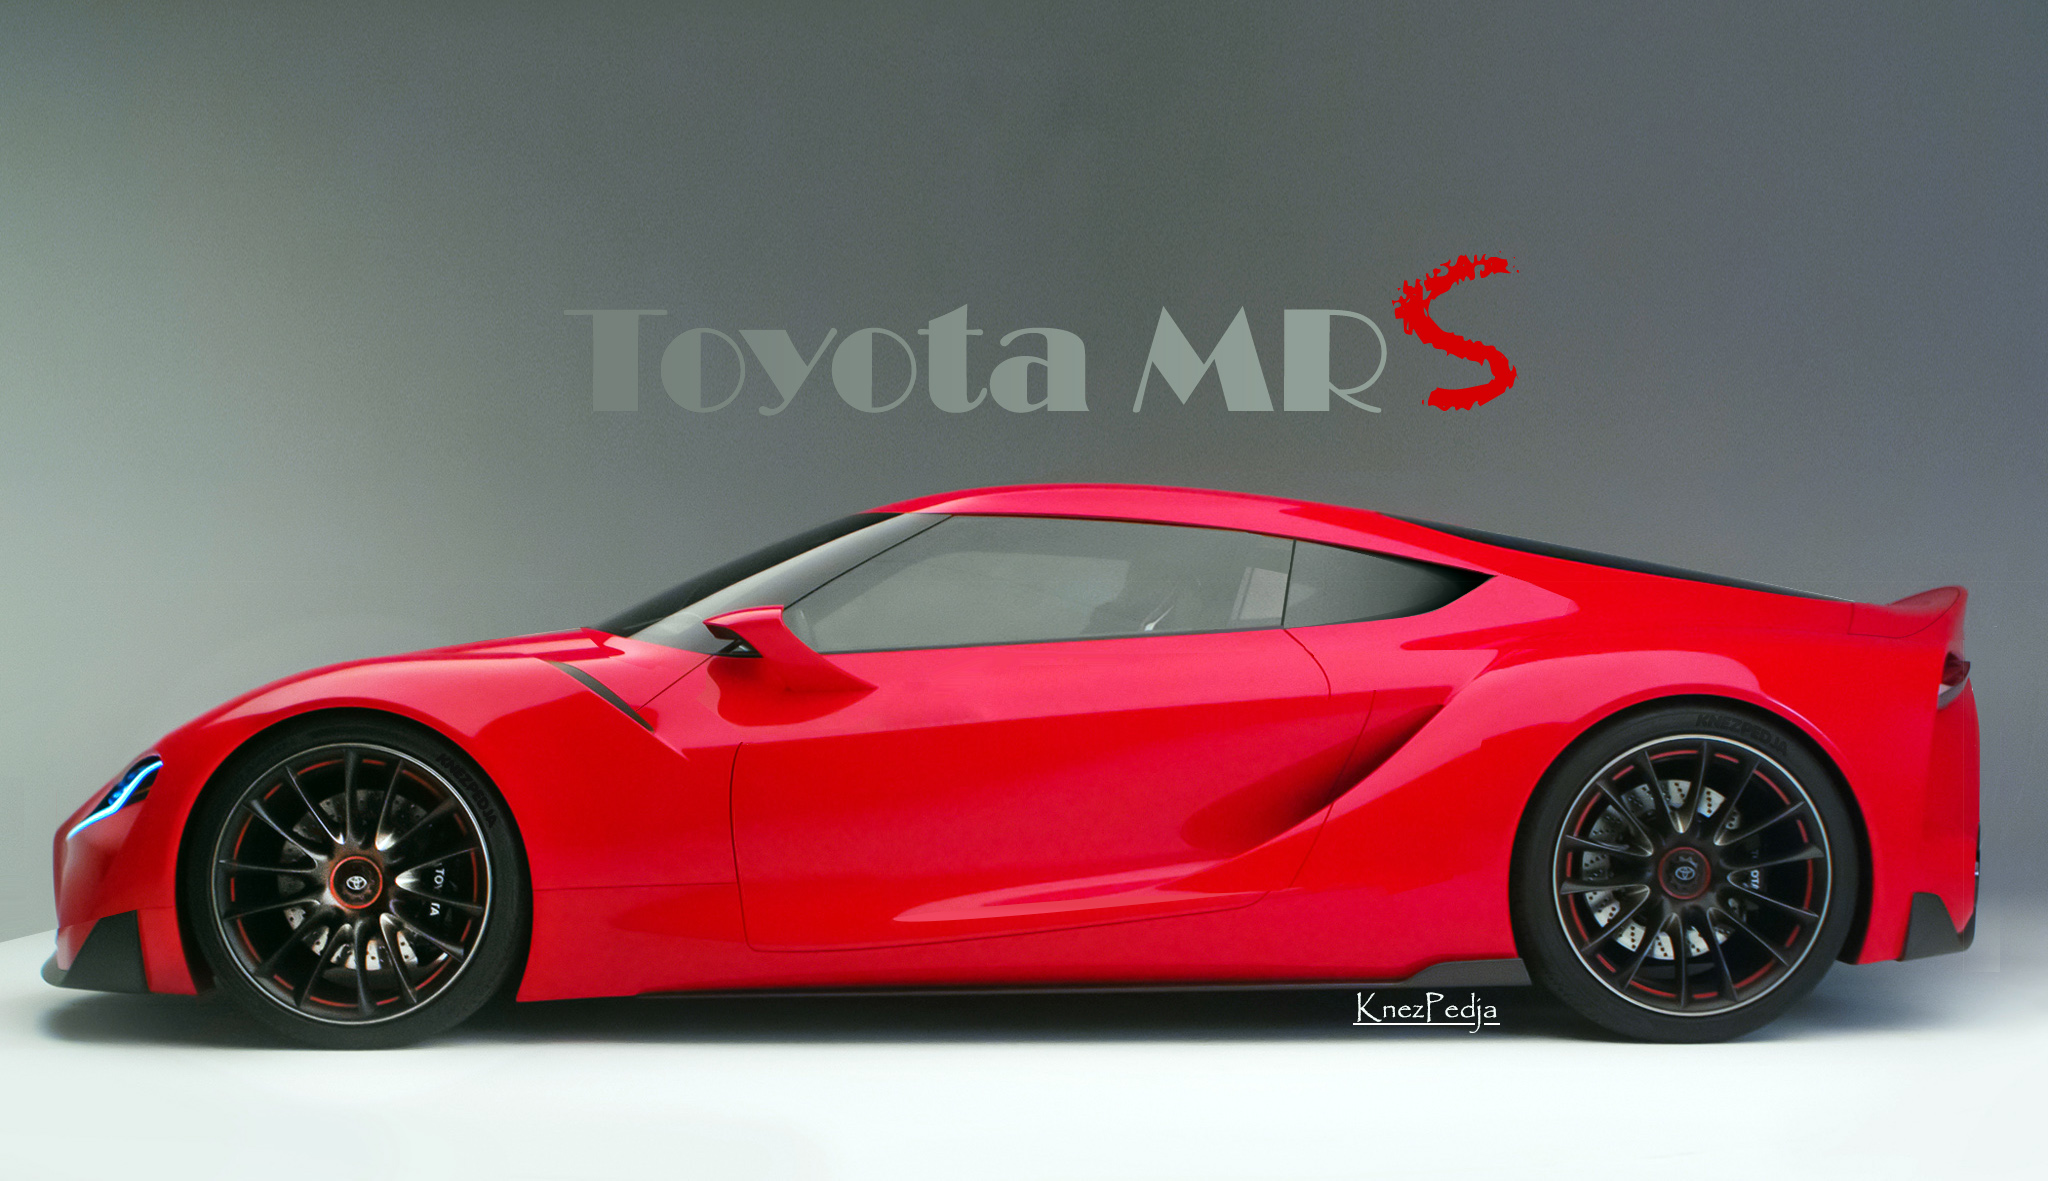 Toyota_MR_S_by_KnezPedja.jpg